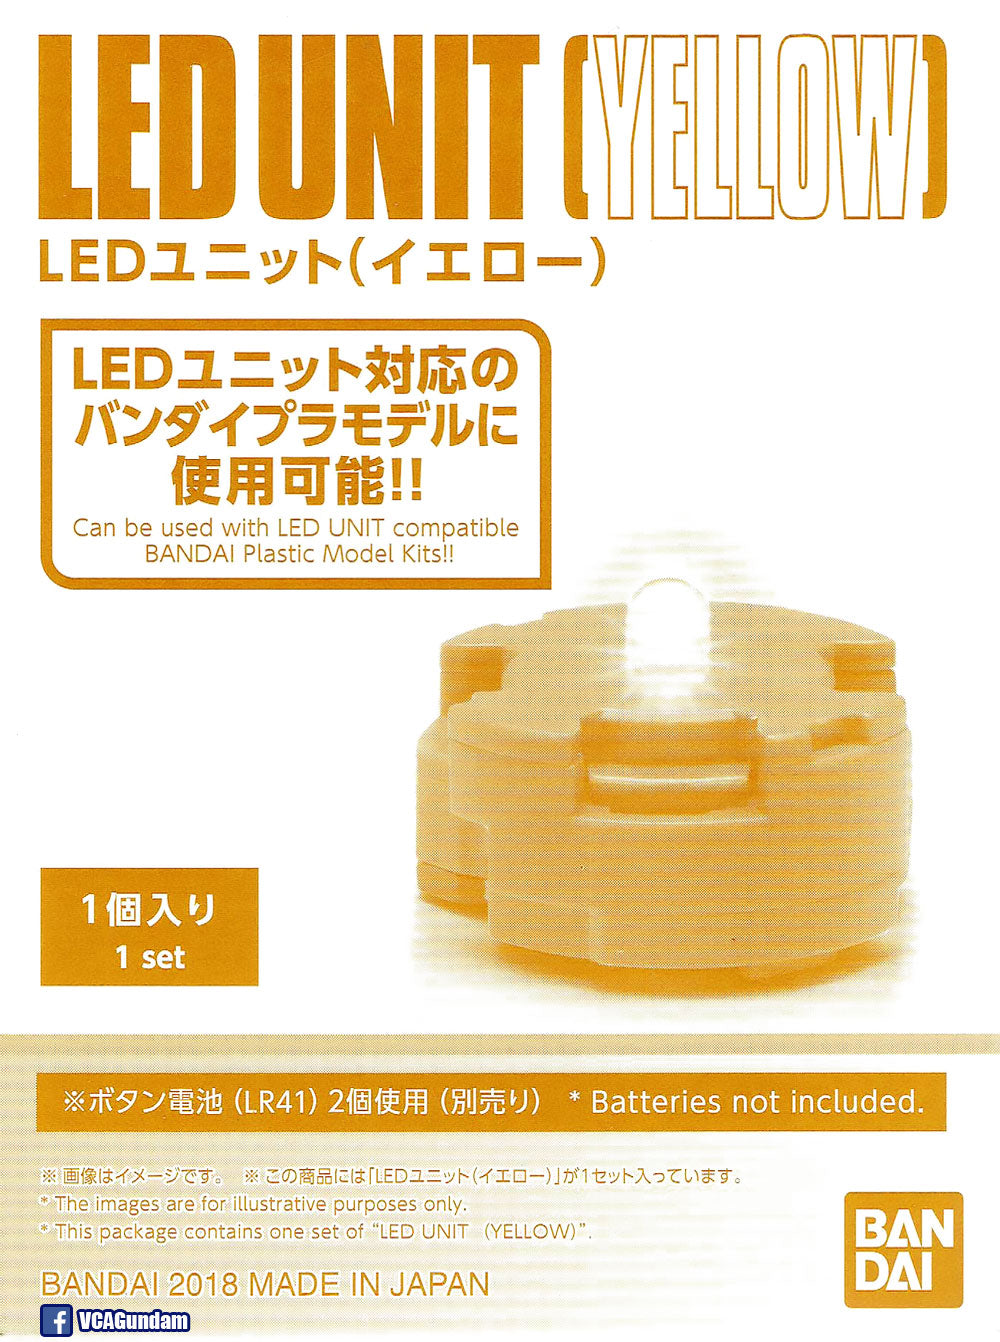 LED 单元（黄色）